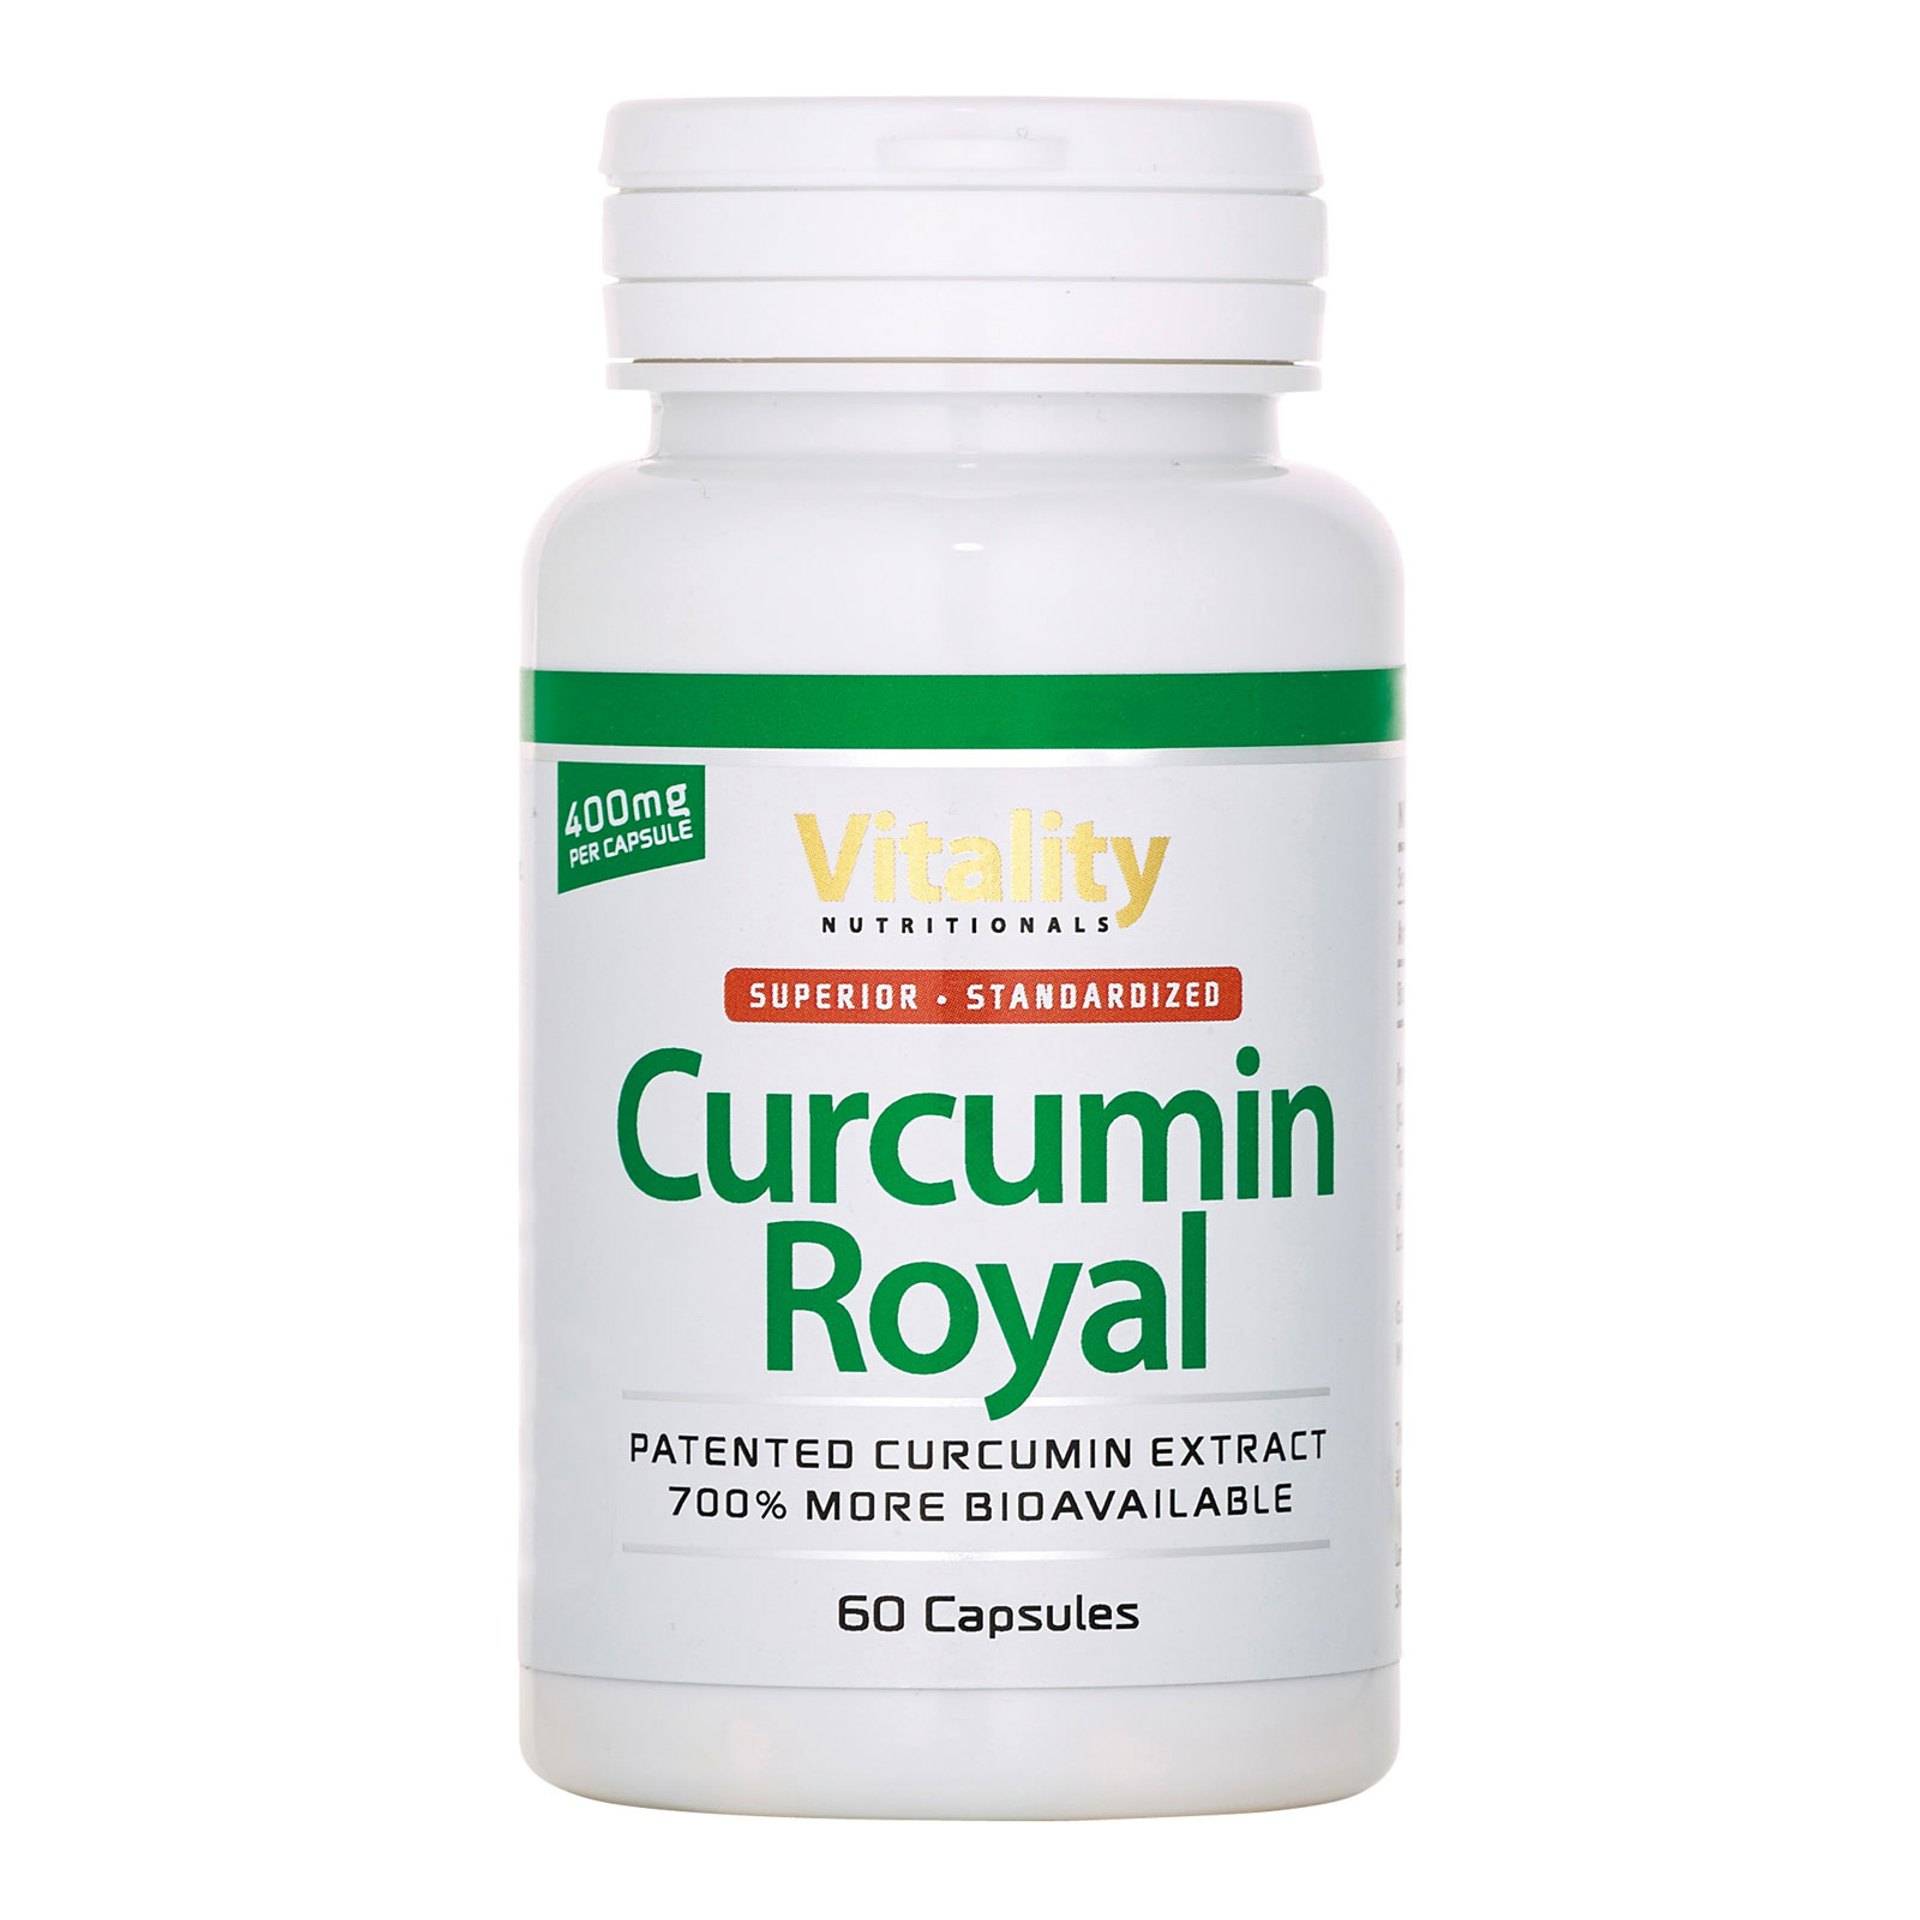 Curcumin-Royal_30g_60capsules_Packshot-Dose_1600x1600px_72pi_20230703.jpg